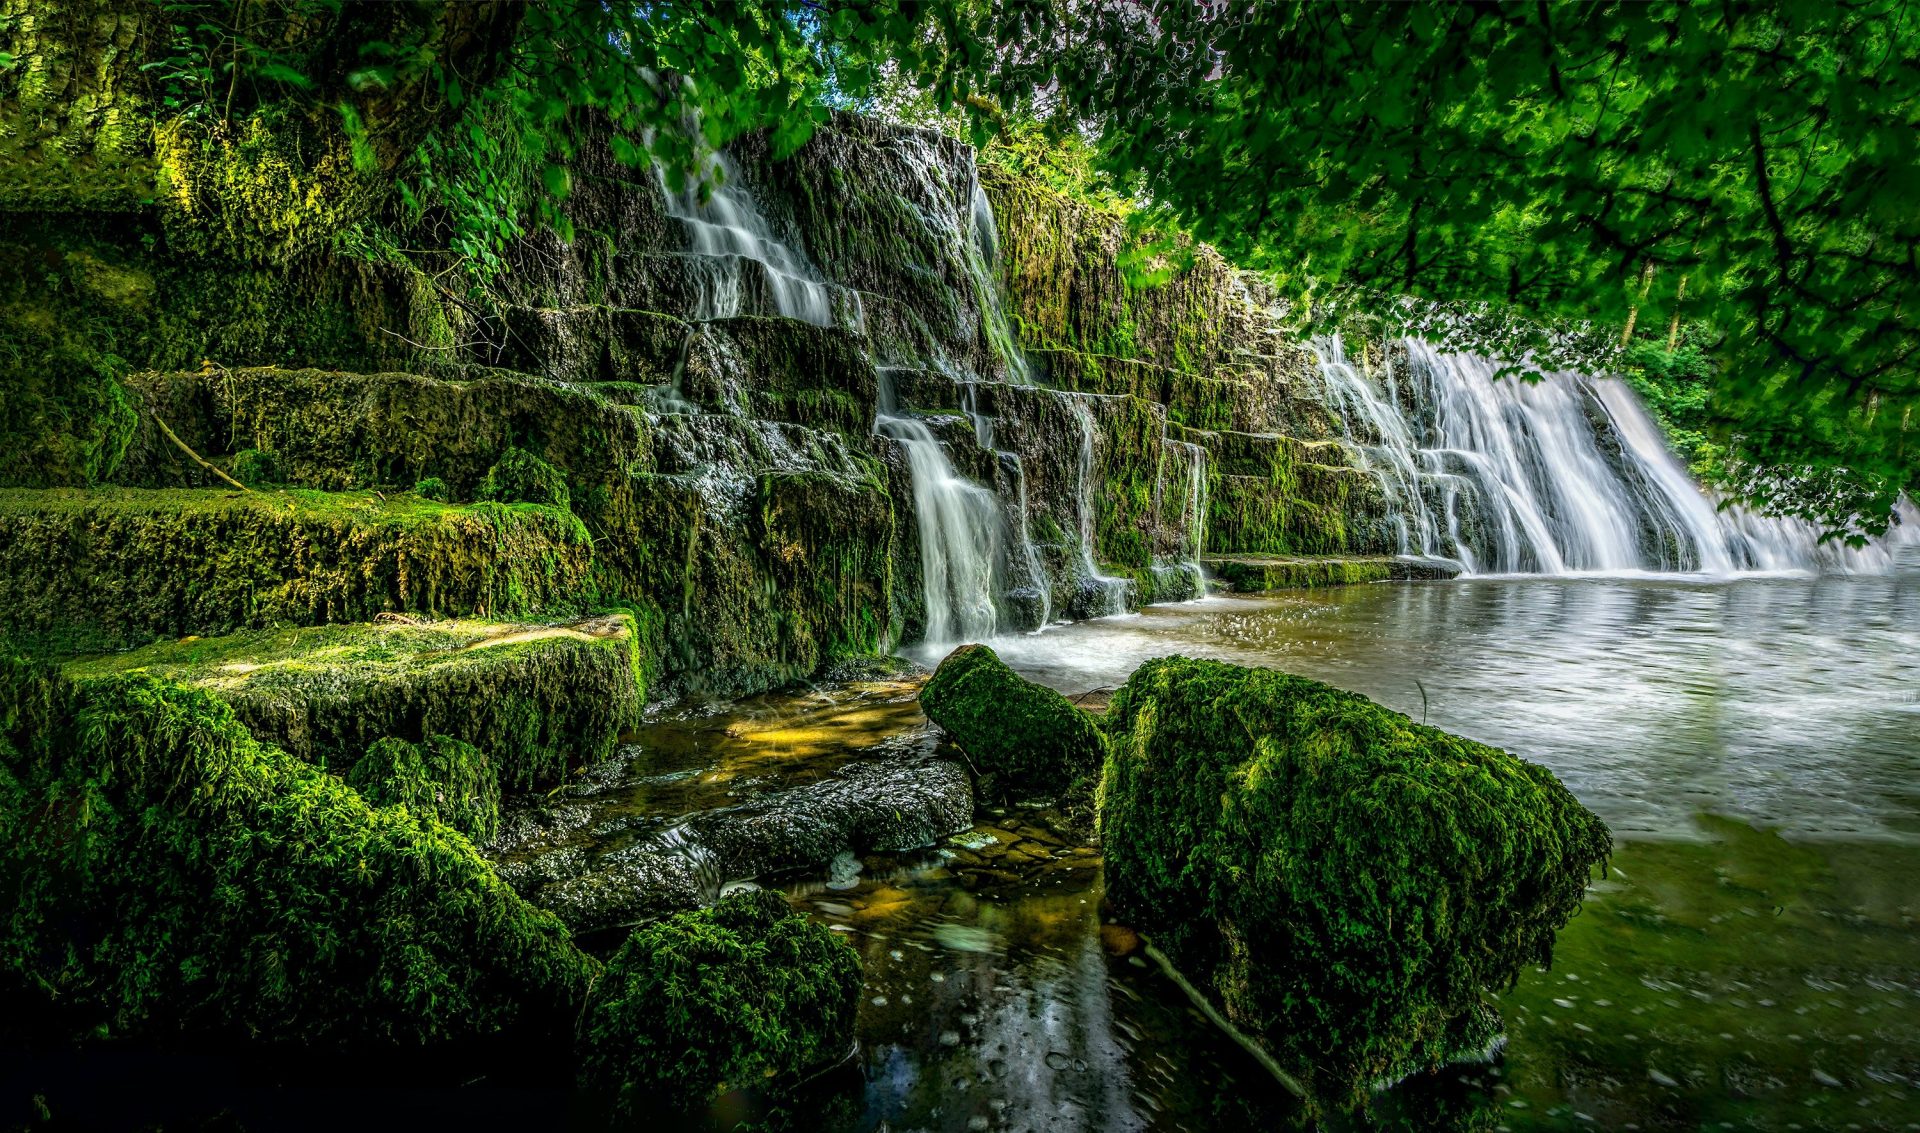 Enchanting photo of a waterfalls